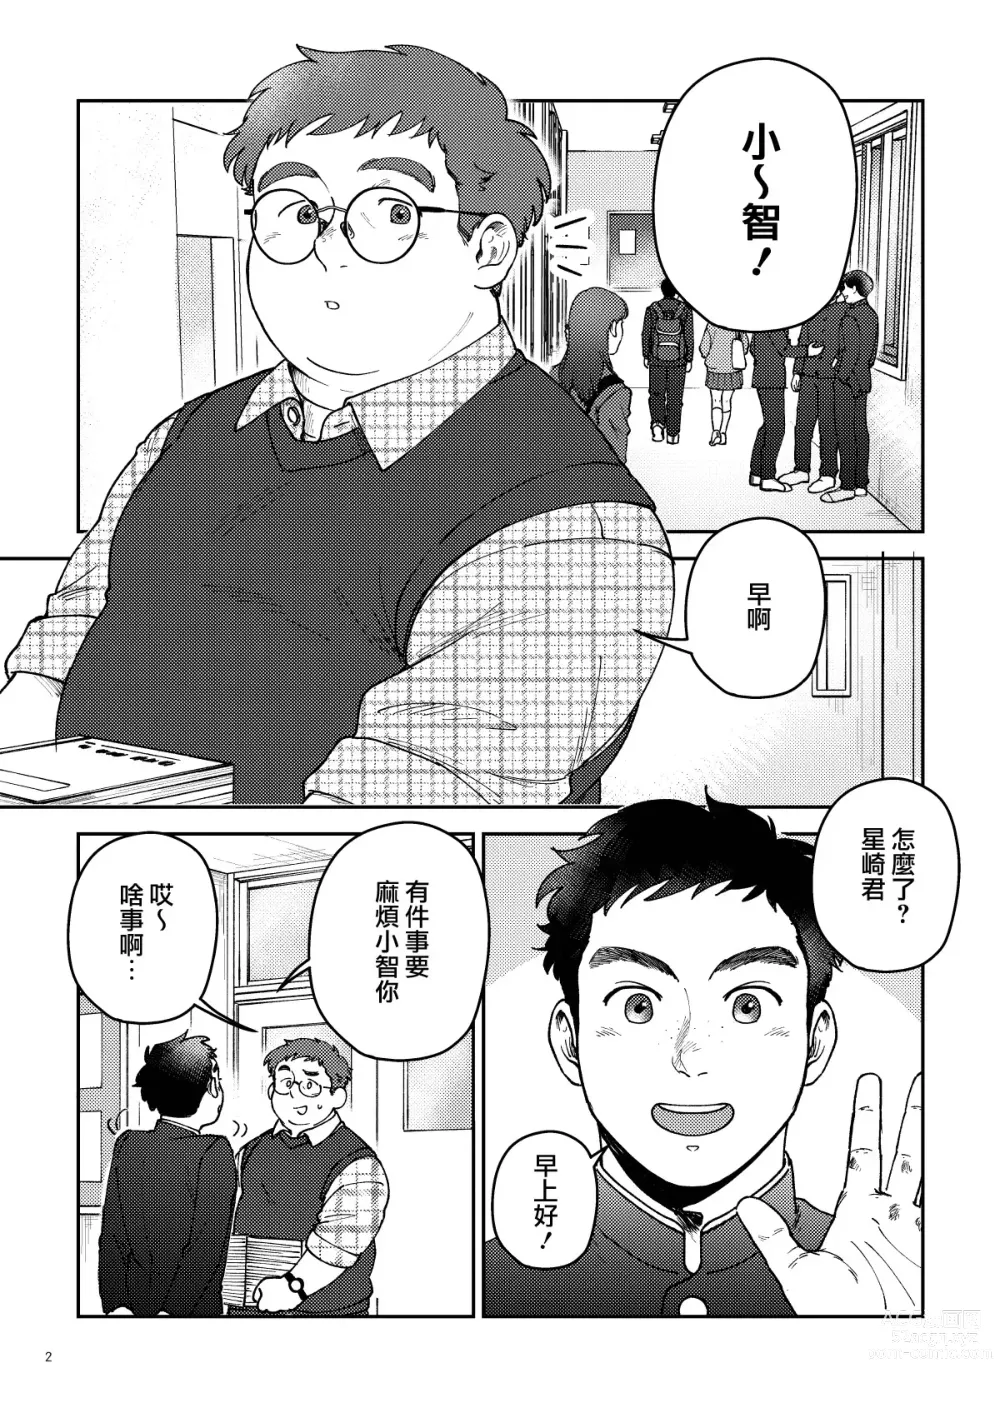 Page 2 of manga はいよろこんでのれイメージギャップハートビート